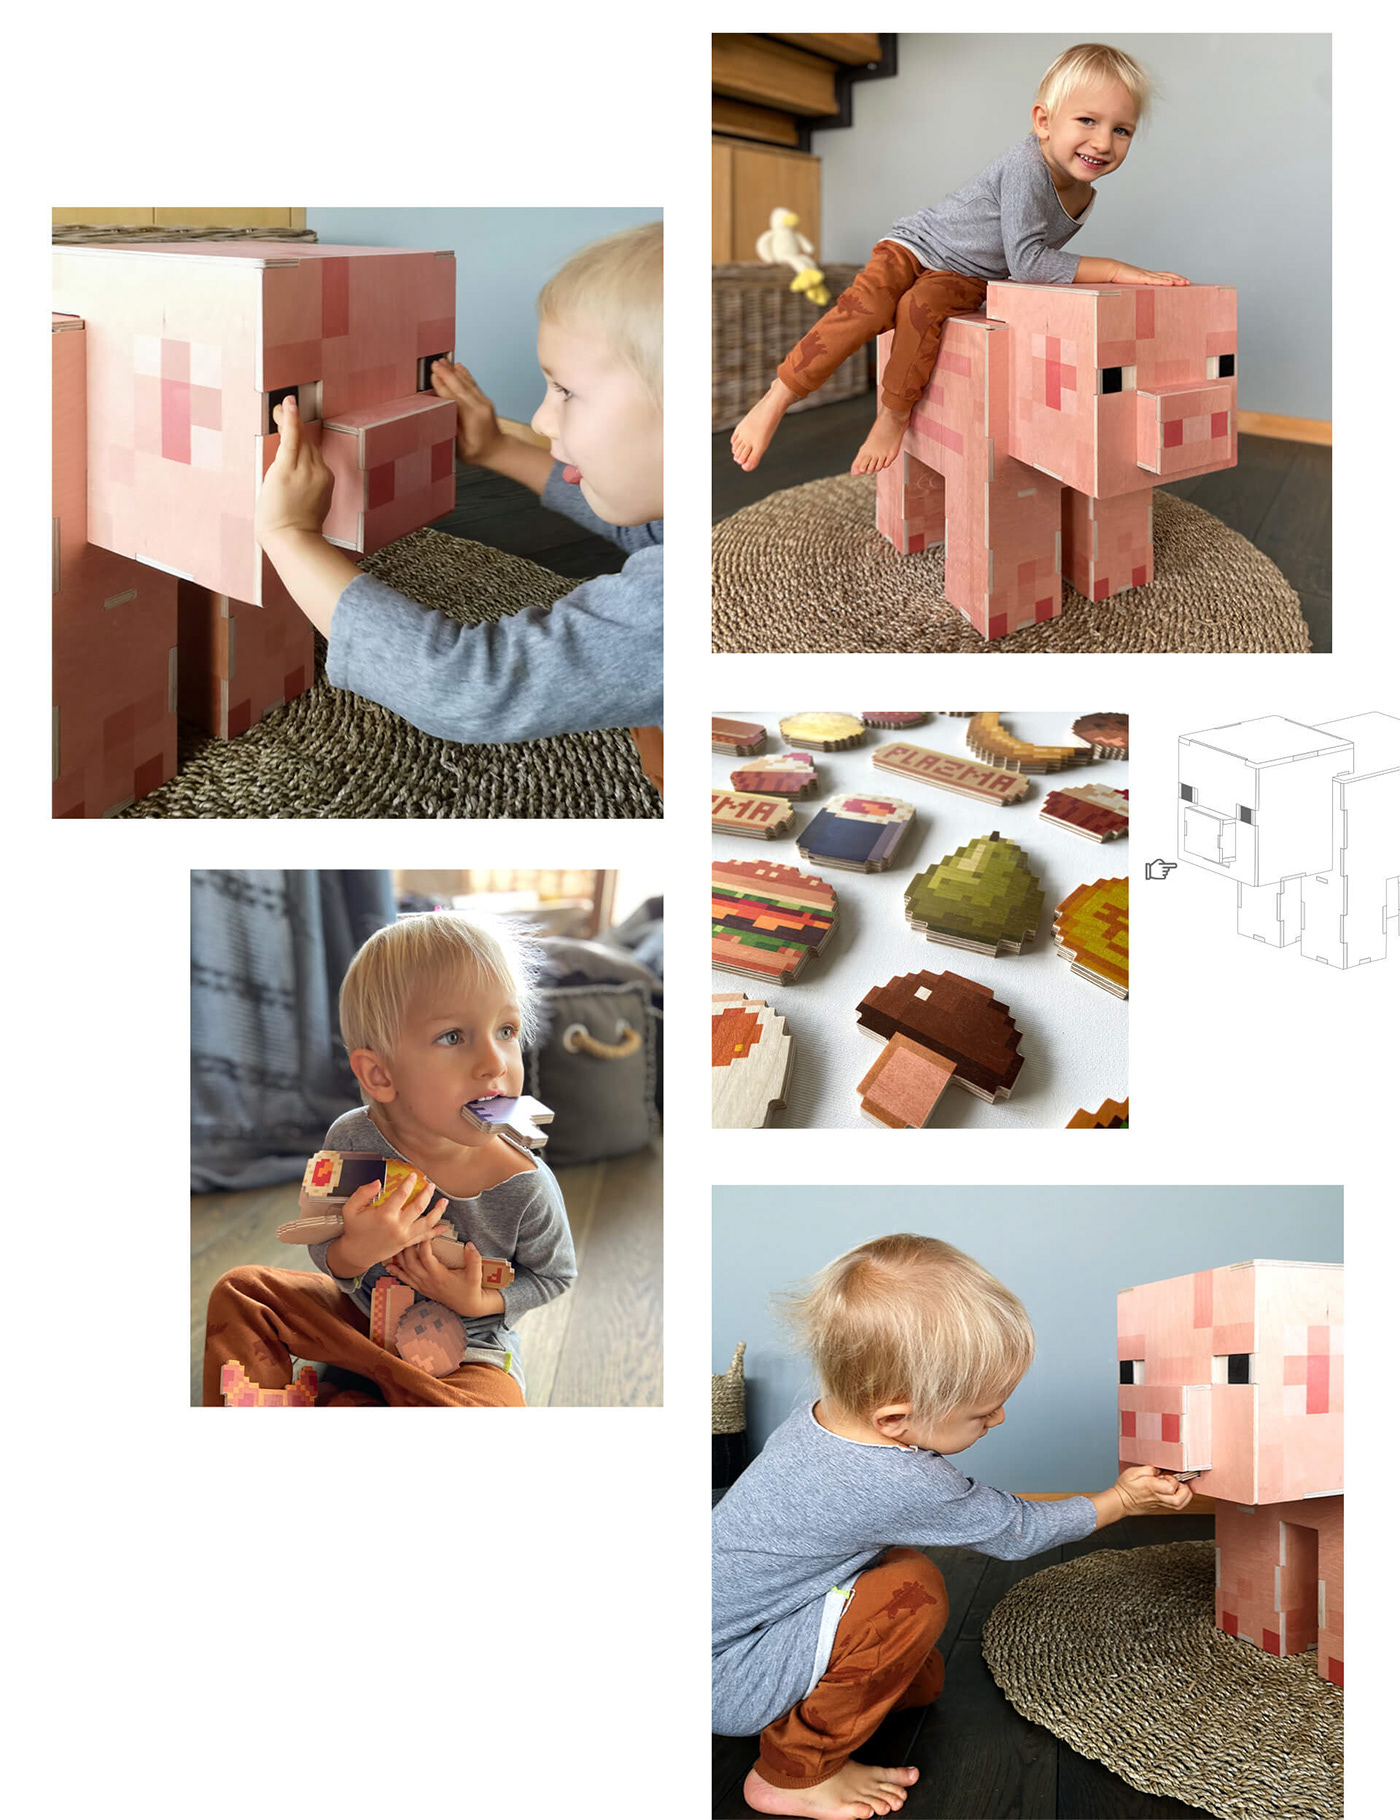 design furniture Interior kids minecraft Notch pig pixel plywood toy